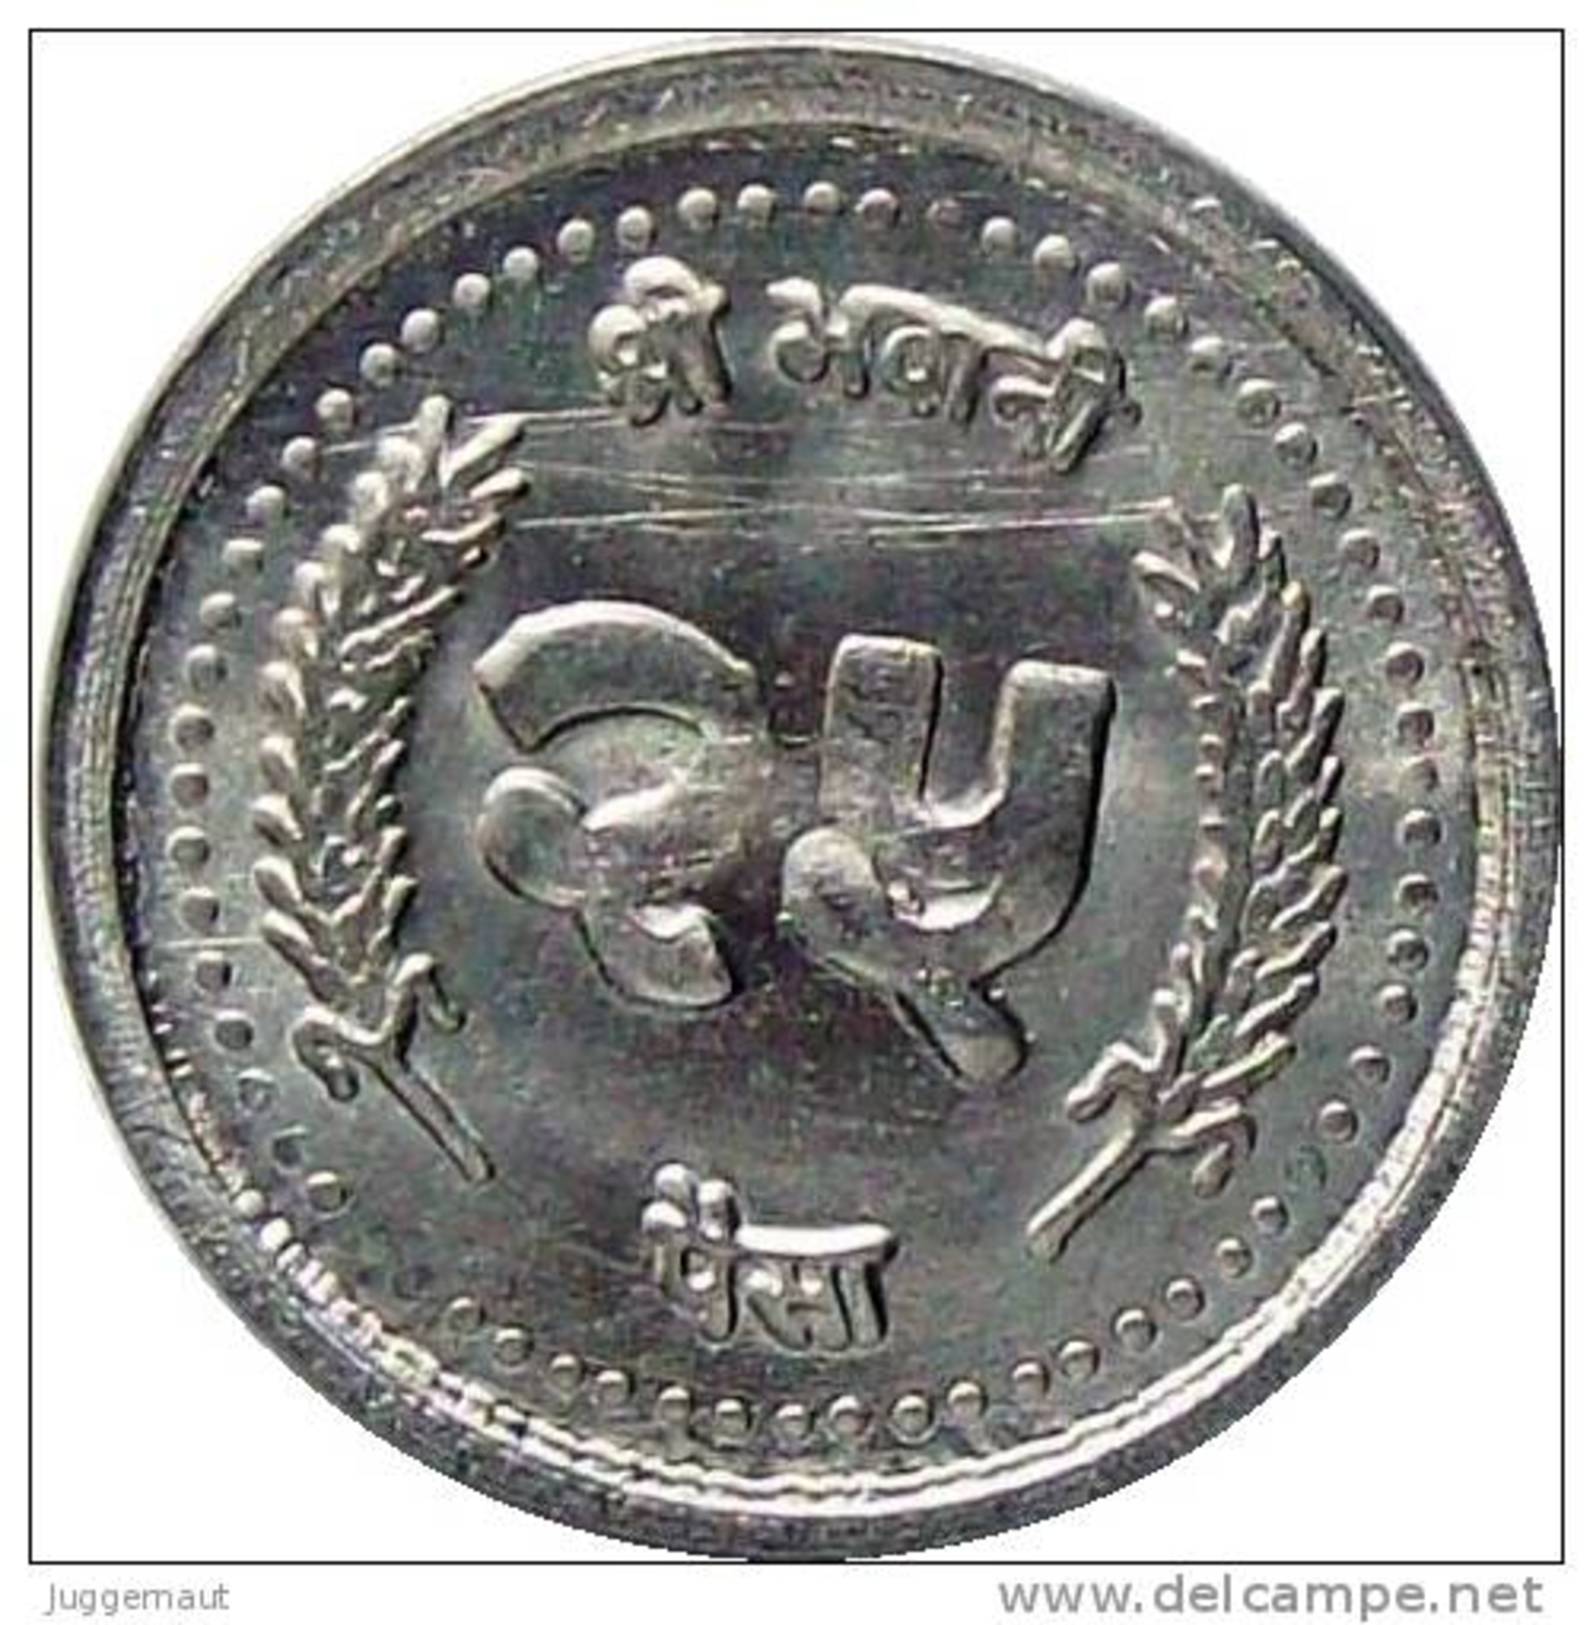 NEPAL 25 PAISA ALUMINUM REGULAR CIRCULATION COIN 2003 KM-1148 UNCIRCULATED UNC - Népal